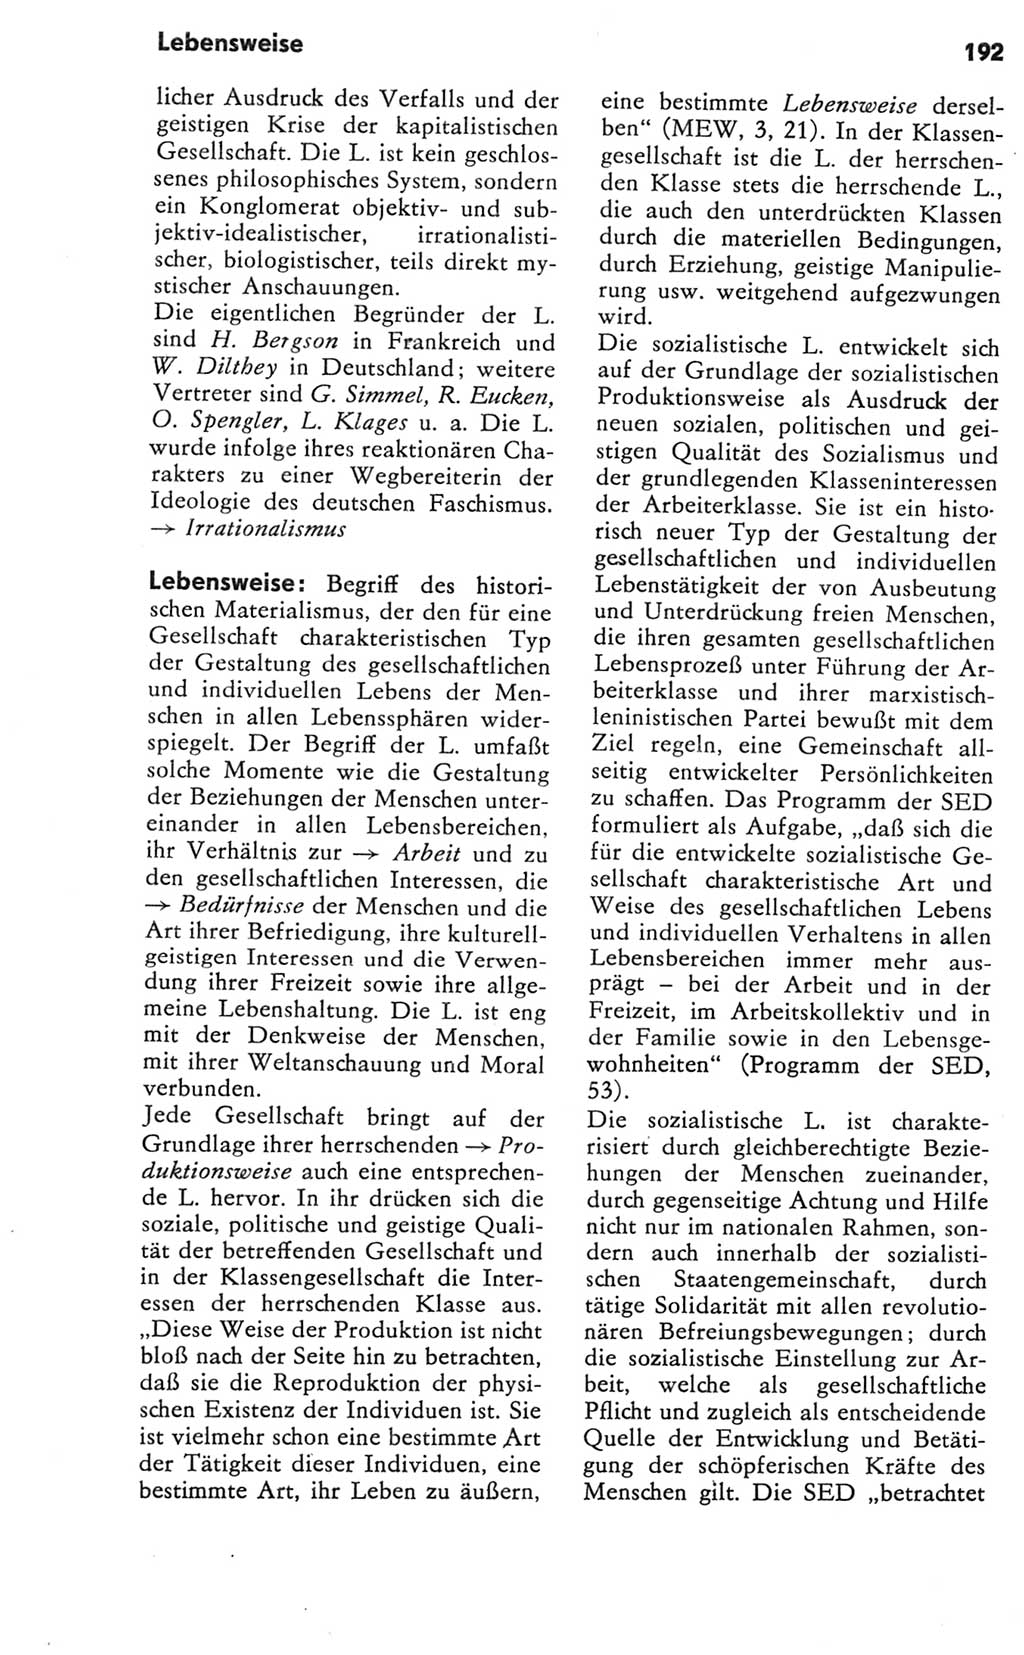 Kleines Wörterbuch der marxistisch-leninistischen Philosophie [Deutsche Demokratische Republik (DDR)] 1981, Seite 192 (Kl. Wb. ML Phil. DDR 1981, S. 192)